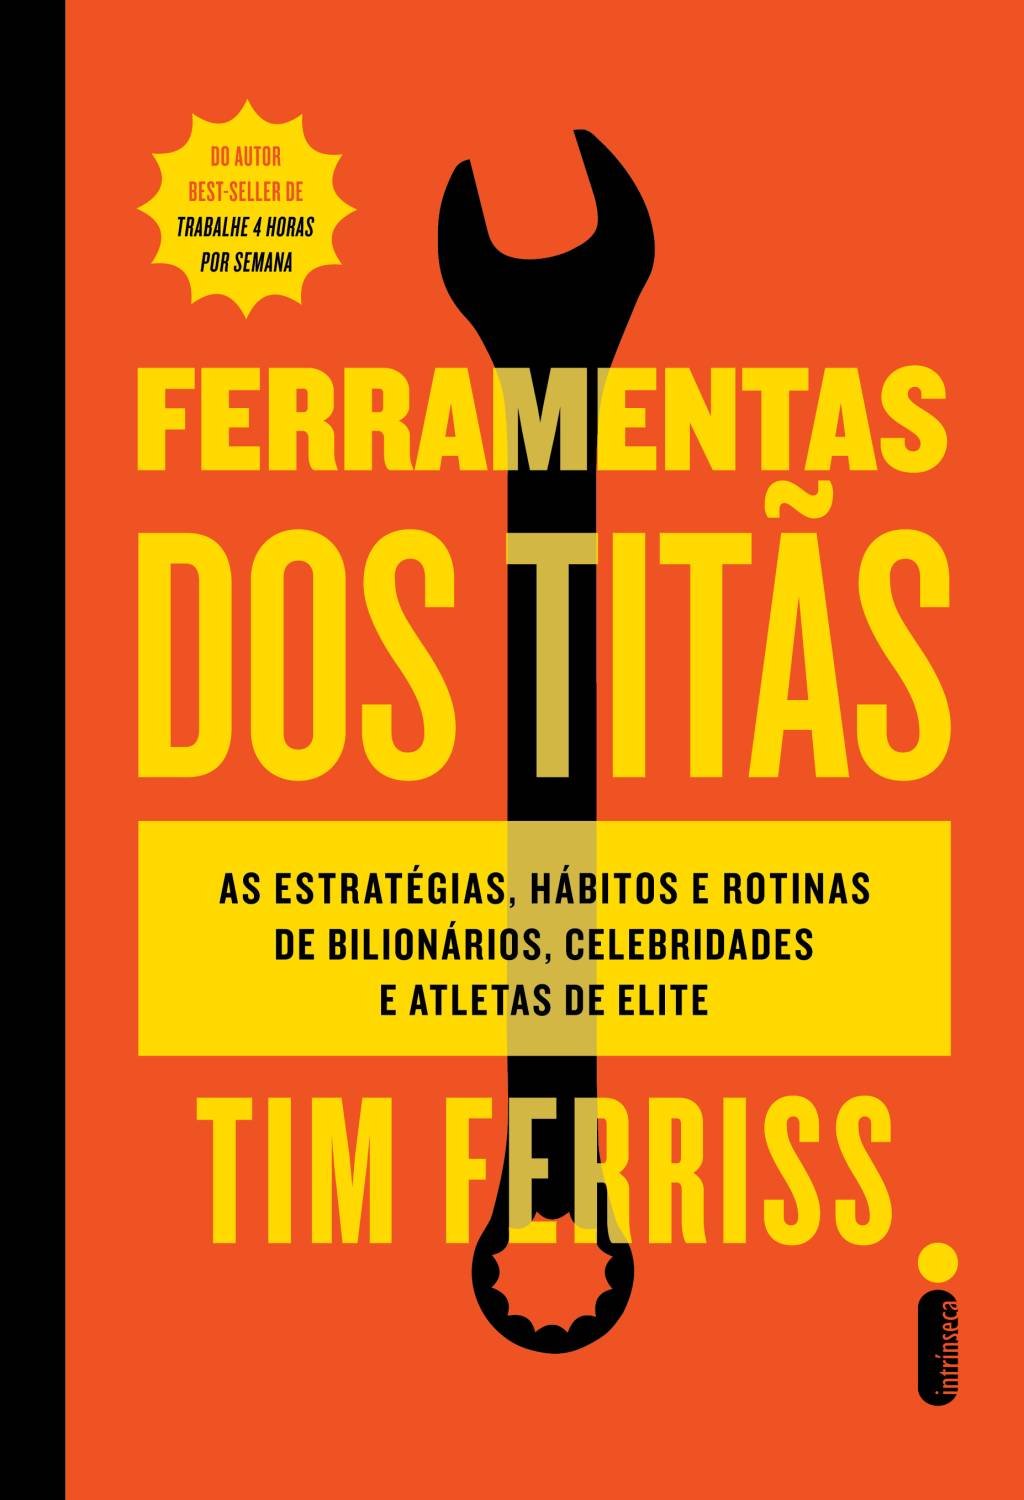 Ferramentas dos Titãs: livro sobre hábitos de personalidades de sucesso ganha nova edição